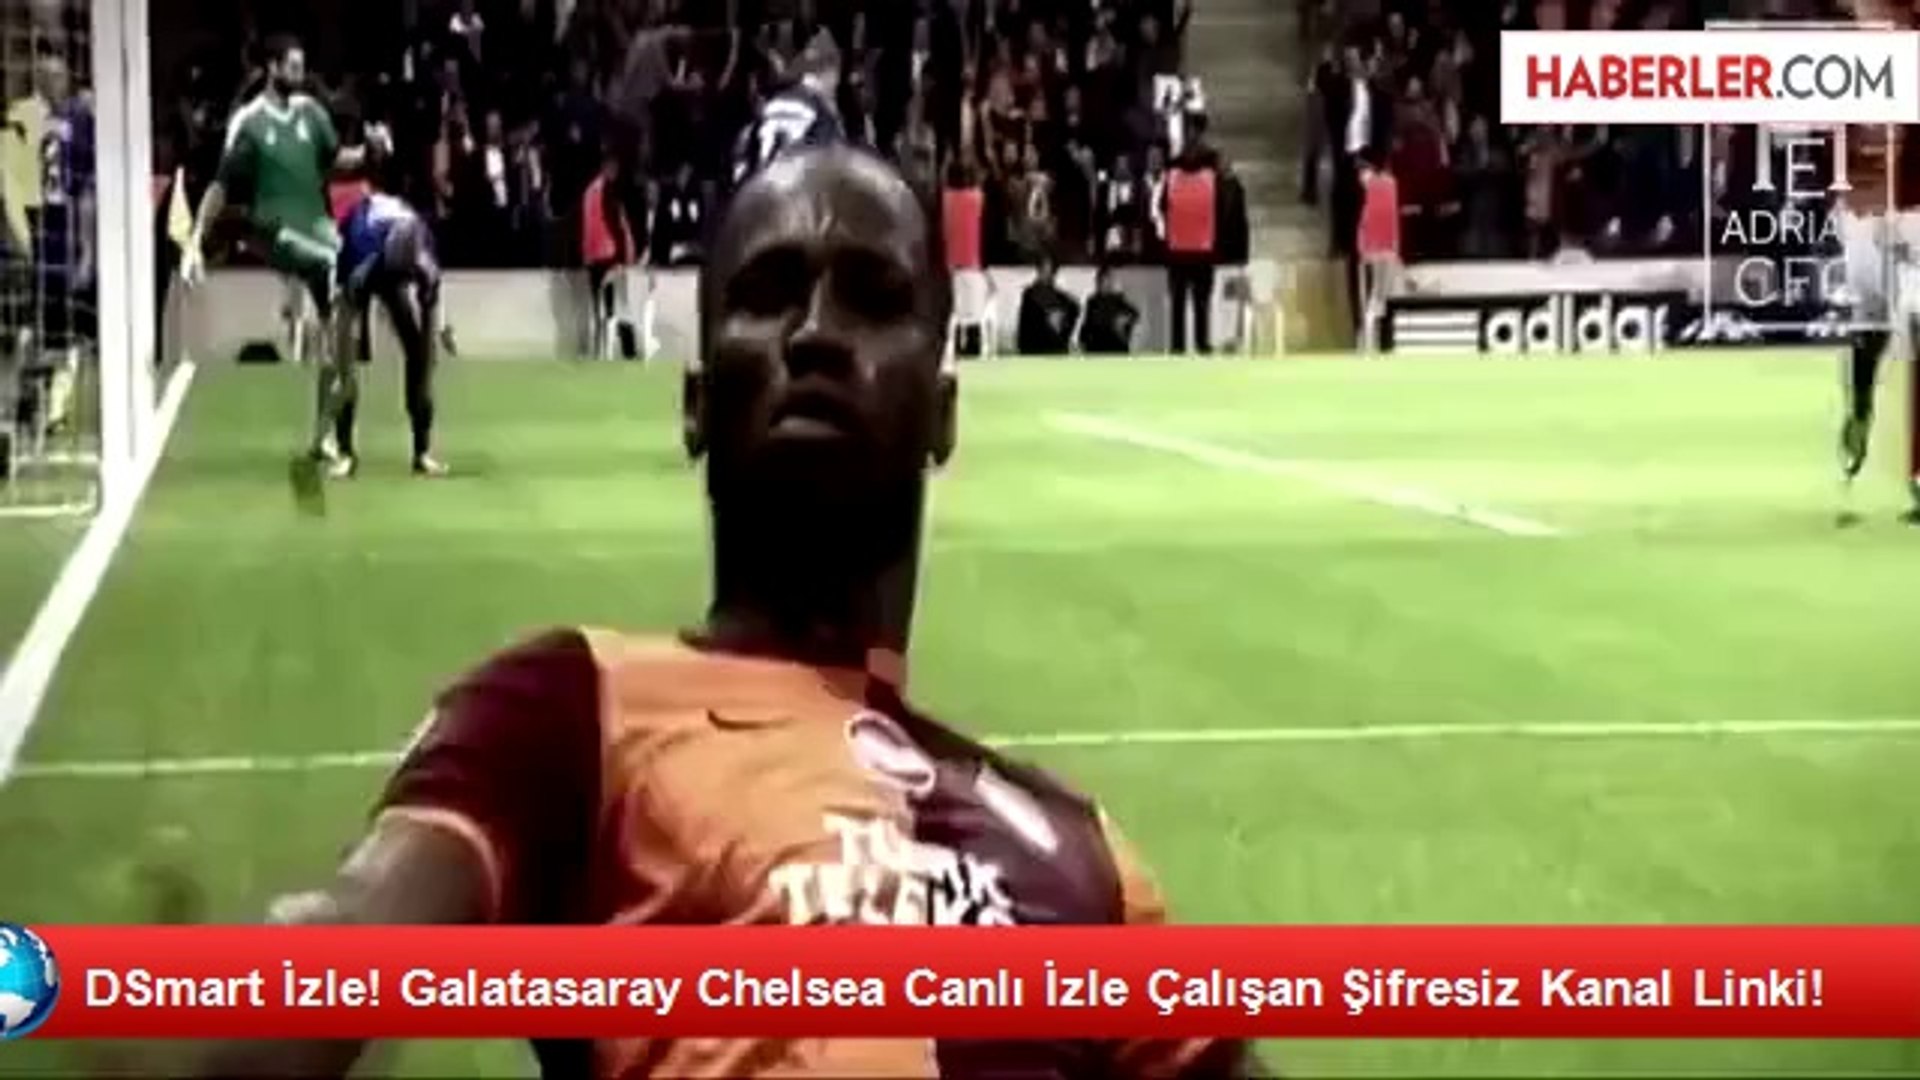 DSmart İzle! Galatasaray Chelsea Canlı İzle Çalışan Şifresiz Kanal Linki! -  Dailymotion Video